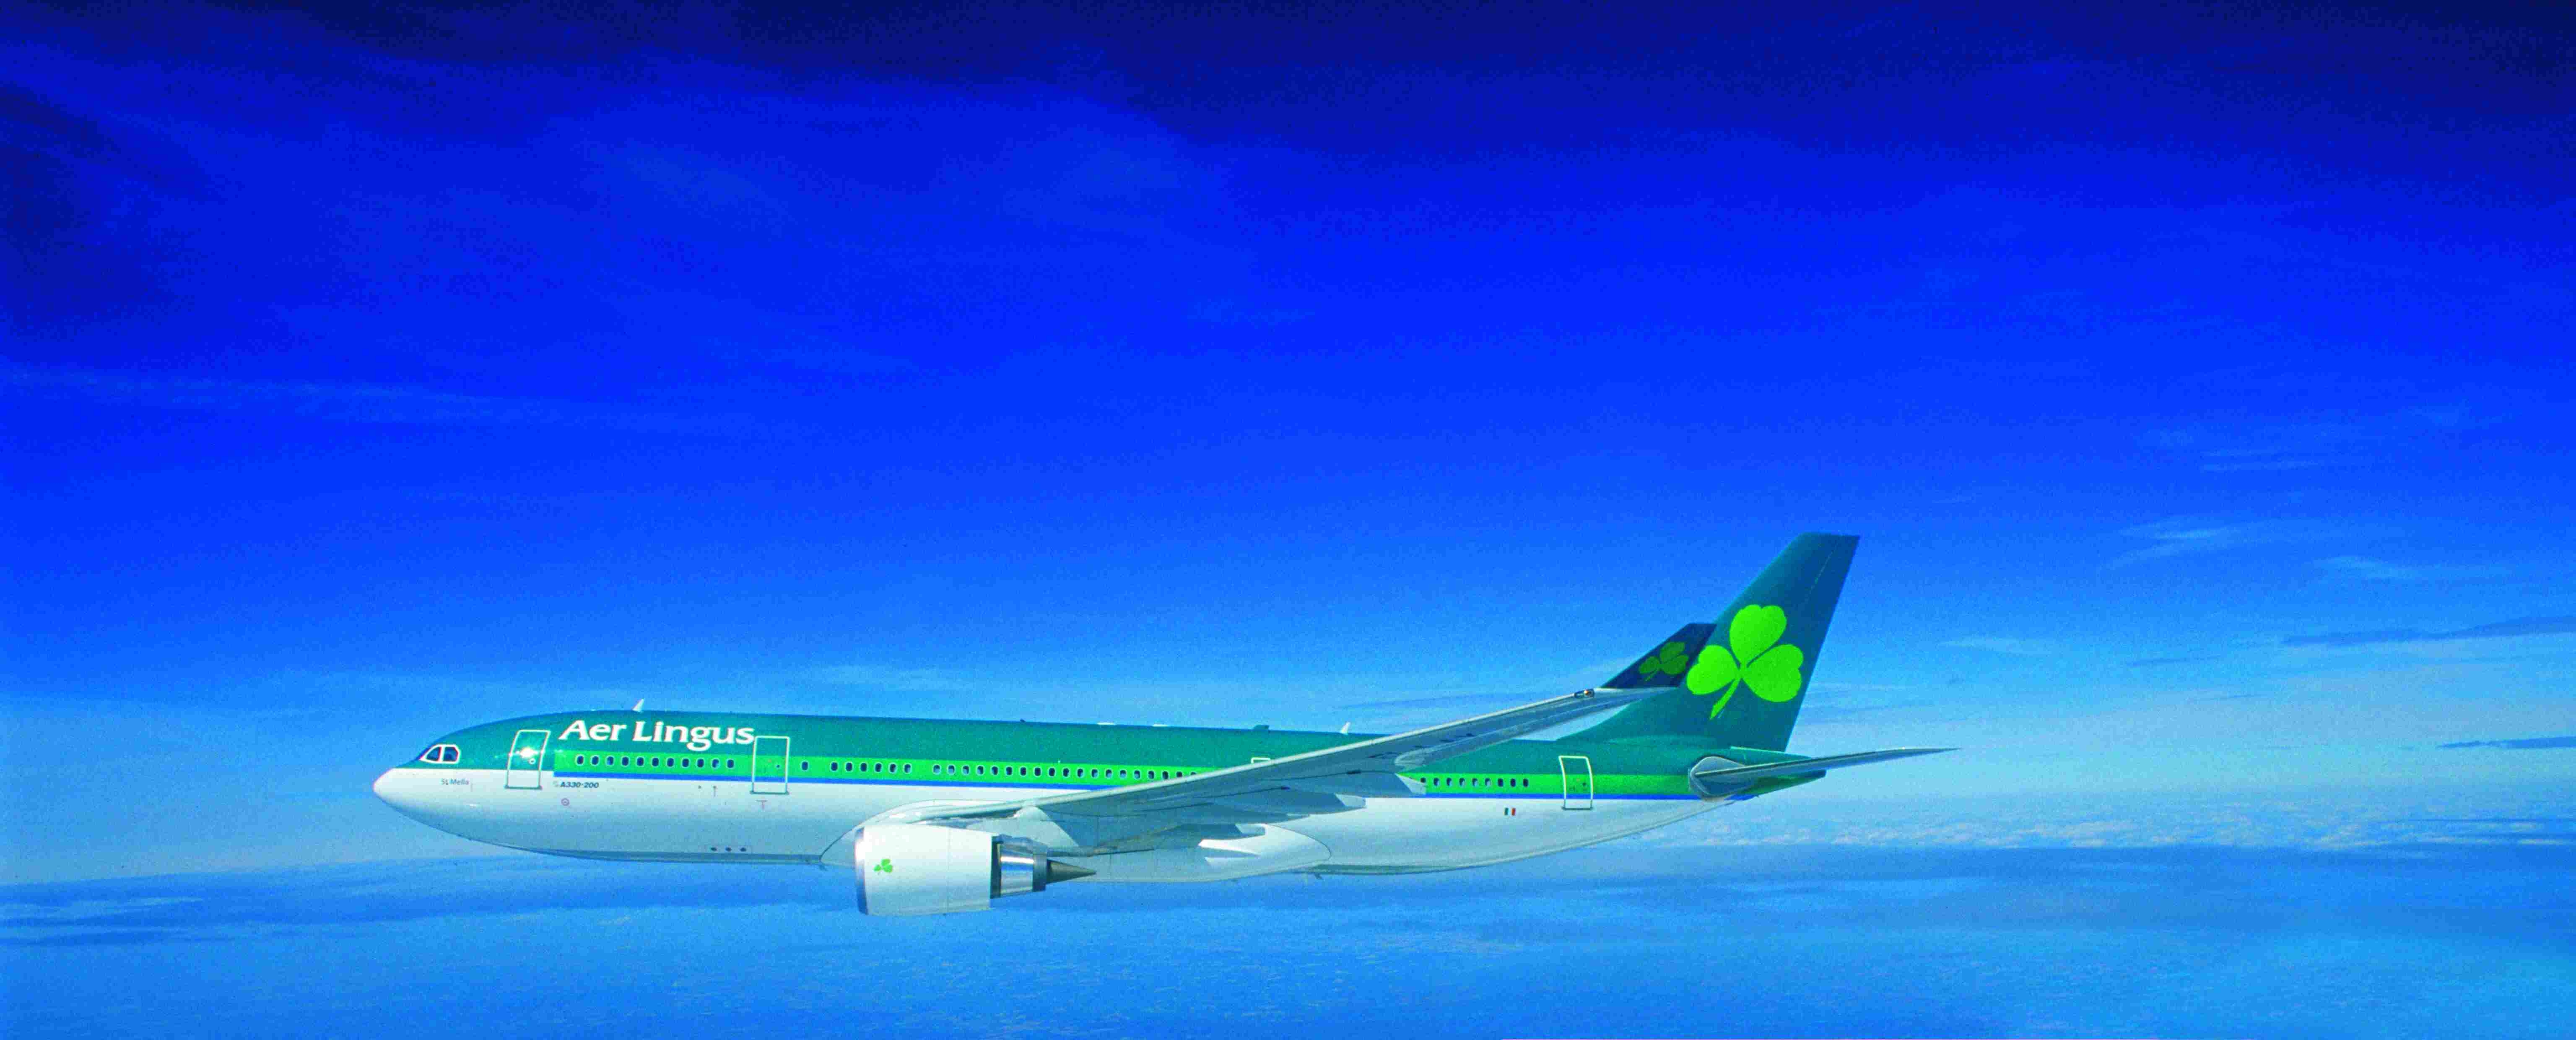 Aer Lingus ne se vendra pas au prix proposé par British Airways